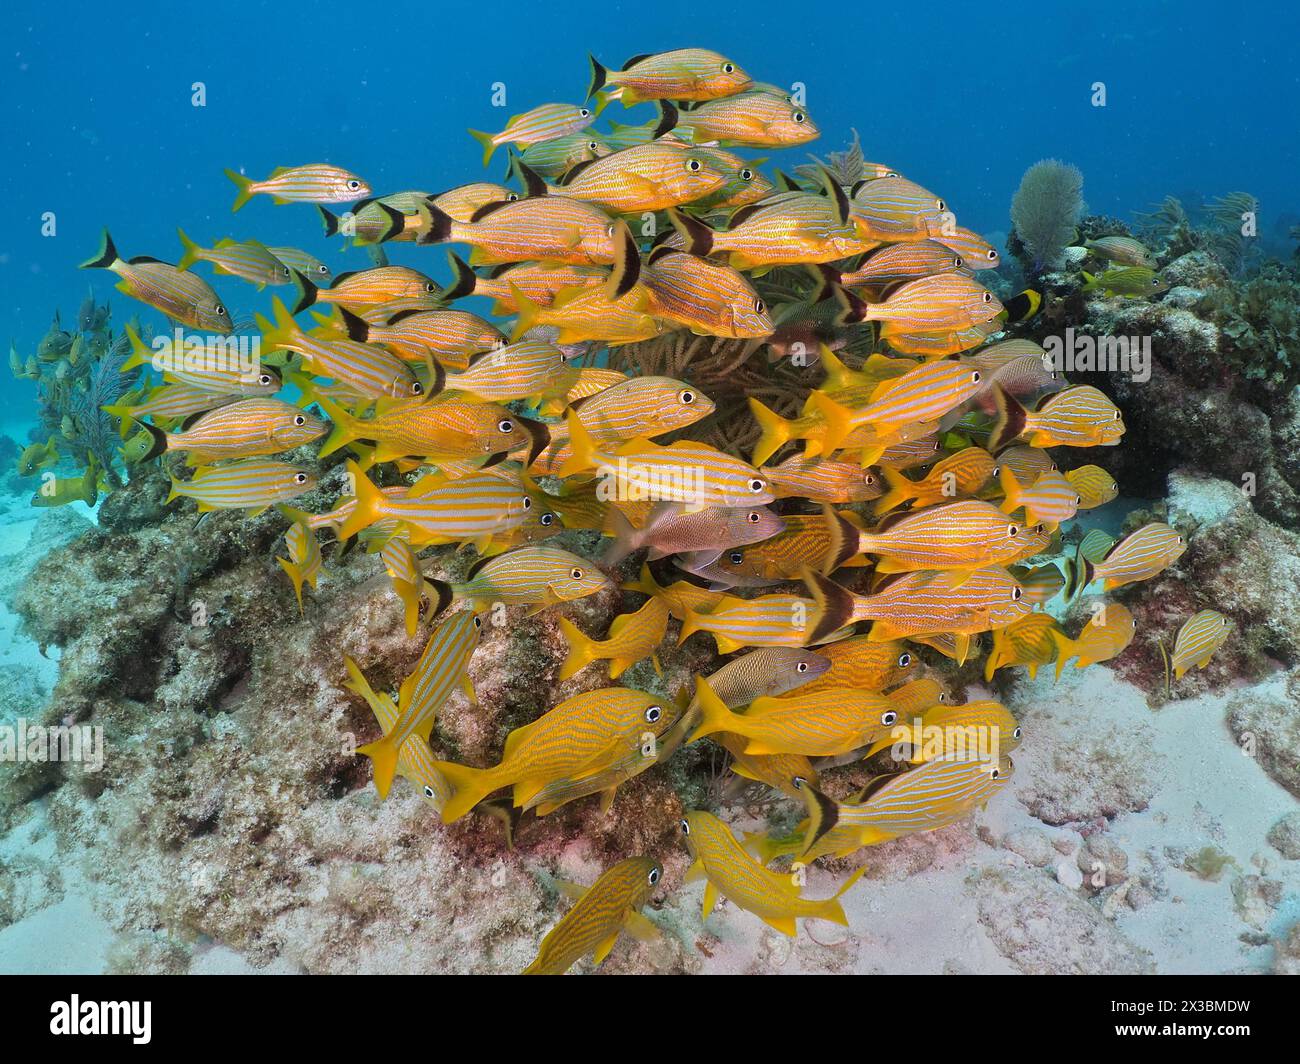 Una densa scuola di pesci gialli, grunt francese (Haemulon flavolineatum) e grunt a strisce gialle (Haemulon chrysargyreum), vicino a una barriera corallina tropicale Foto Stock